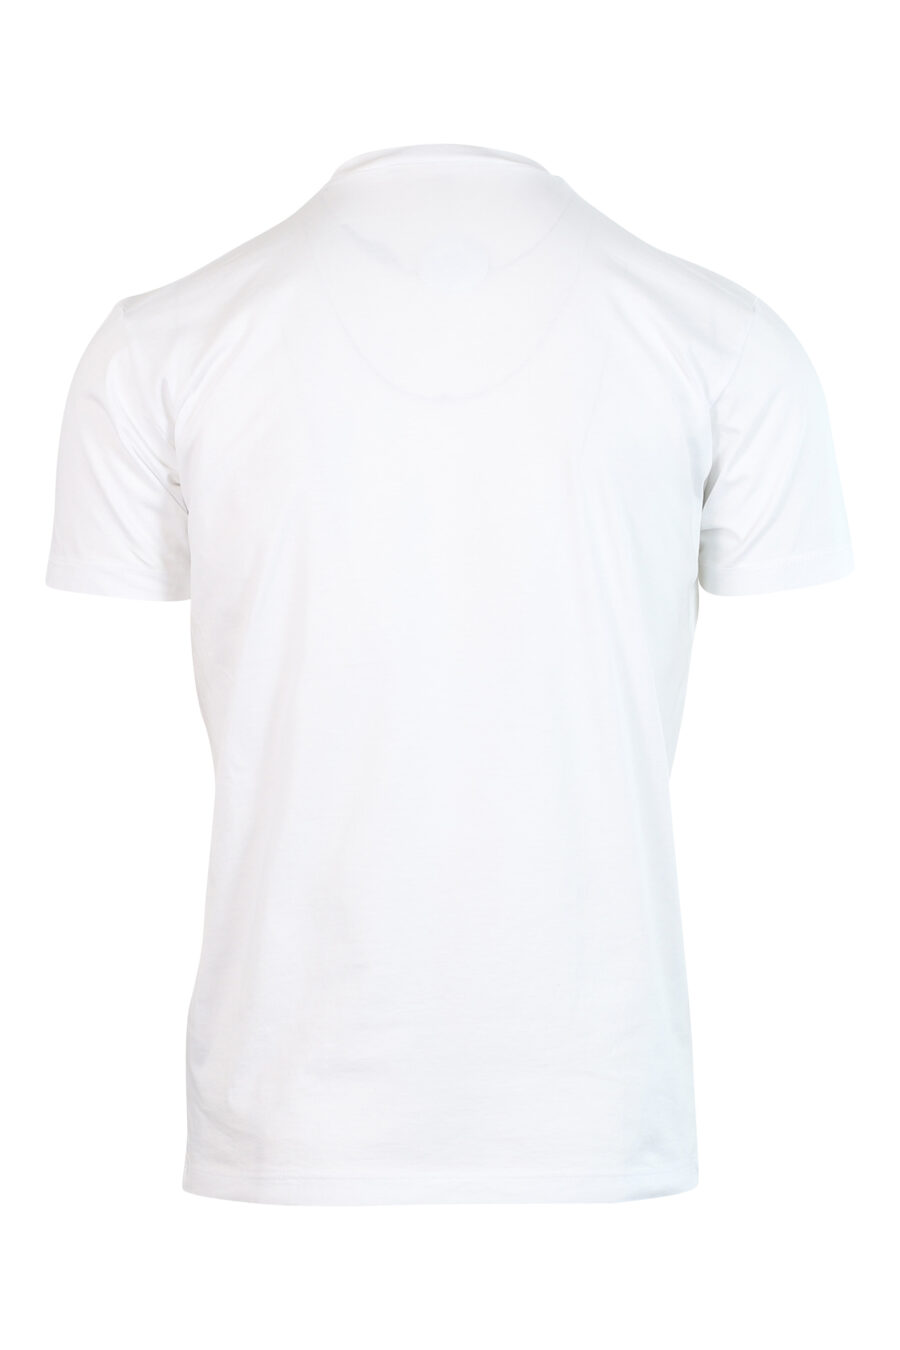 Weißes T-Shirt mit "Schweiß und Tränen"-Logo - 8058049696083 2